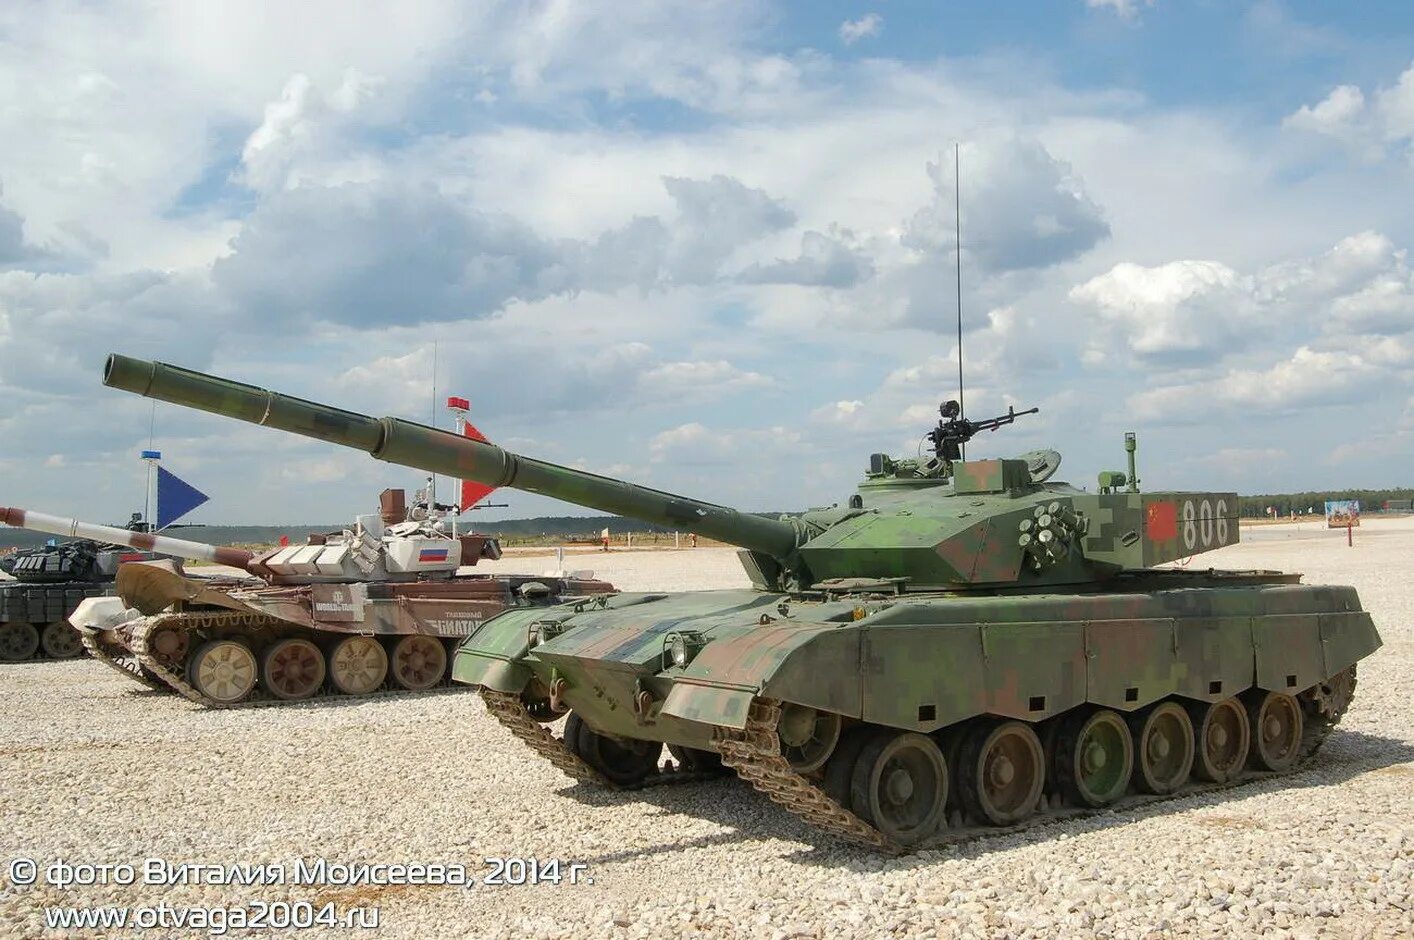 Tank 300 great Wall. Китайский танк 300. Китайский внедорожник танк 300. Китайский танк 500. Танк 300 производство